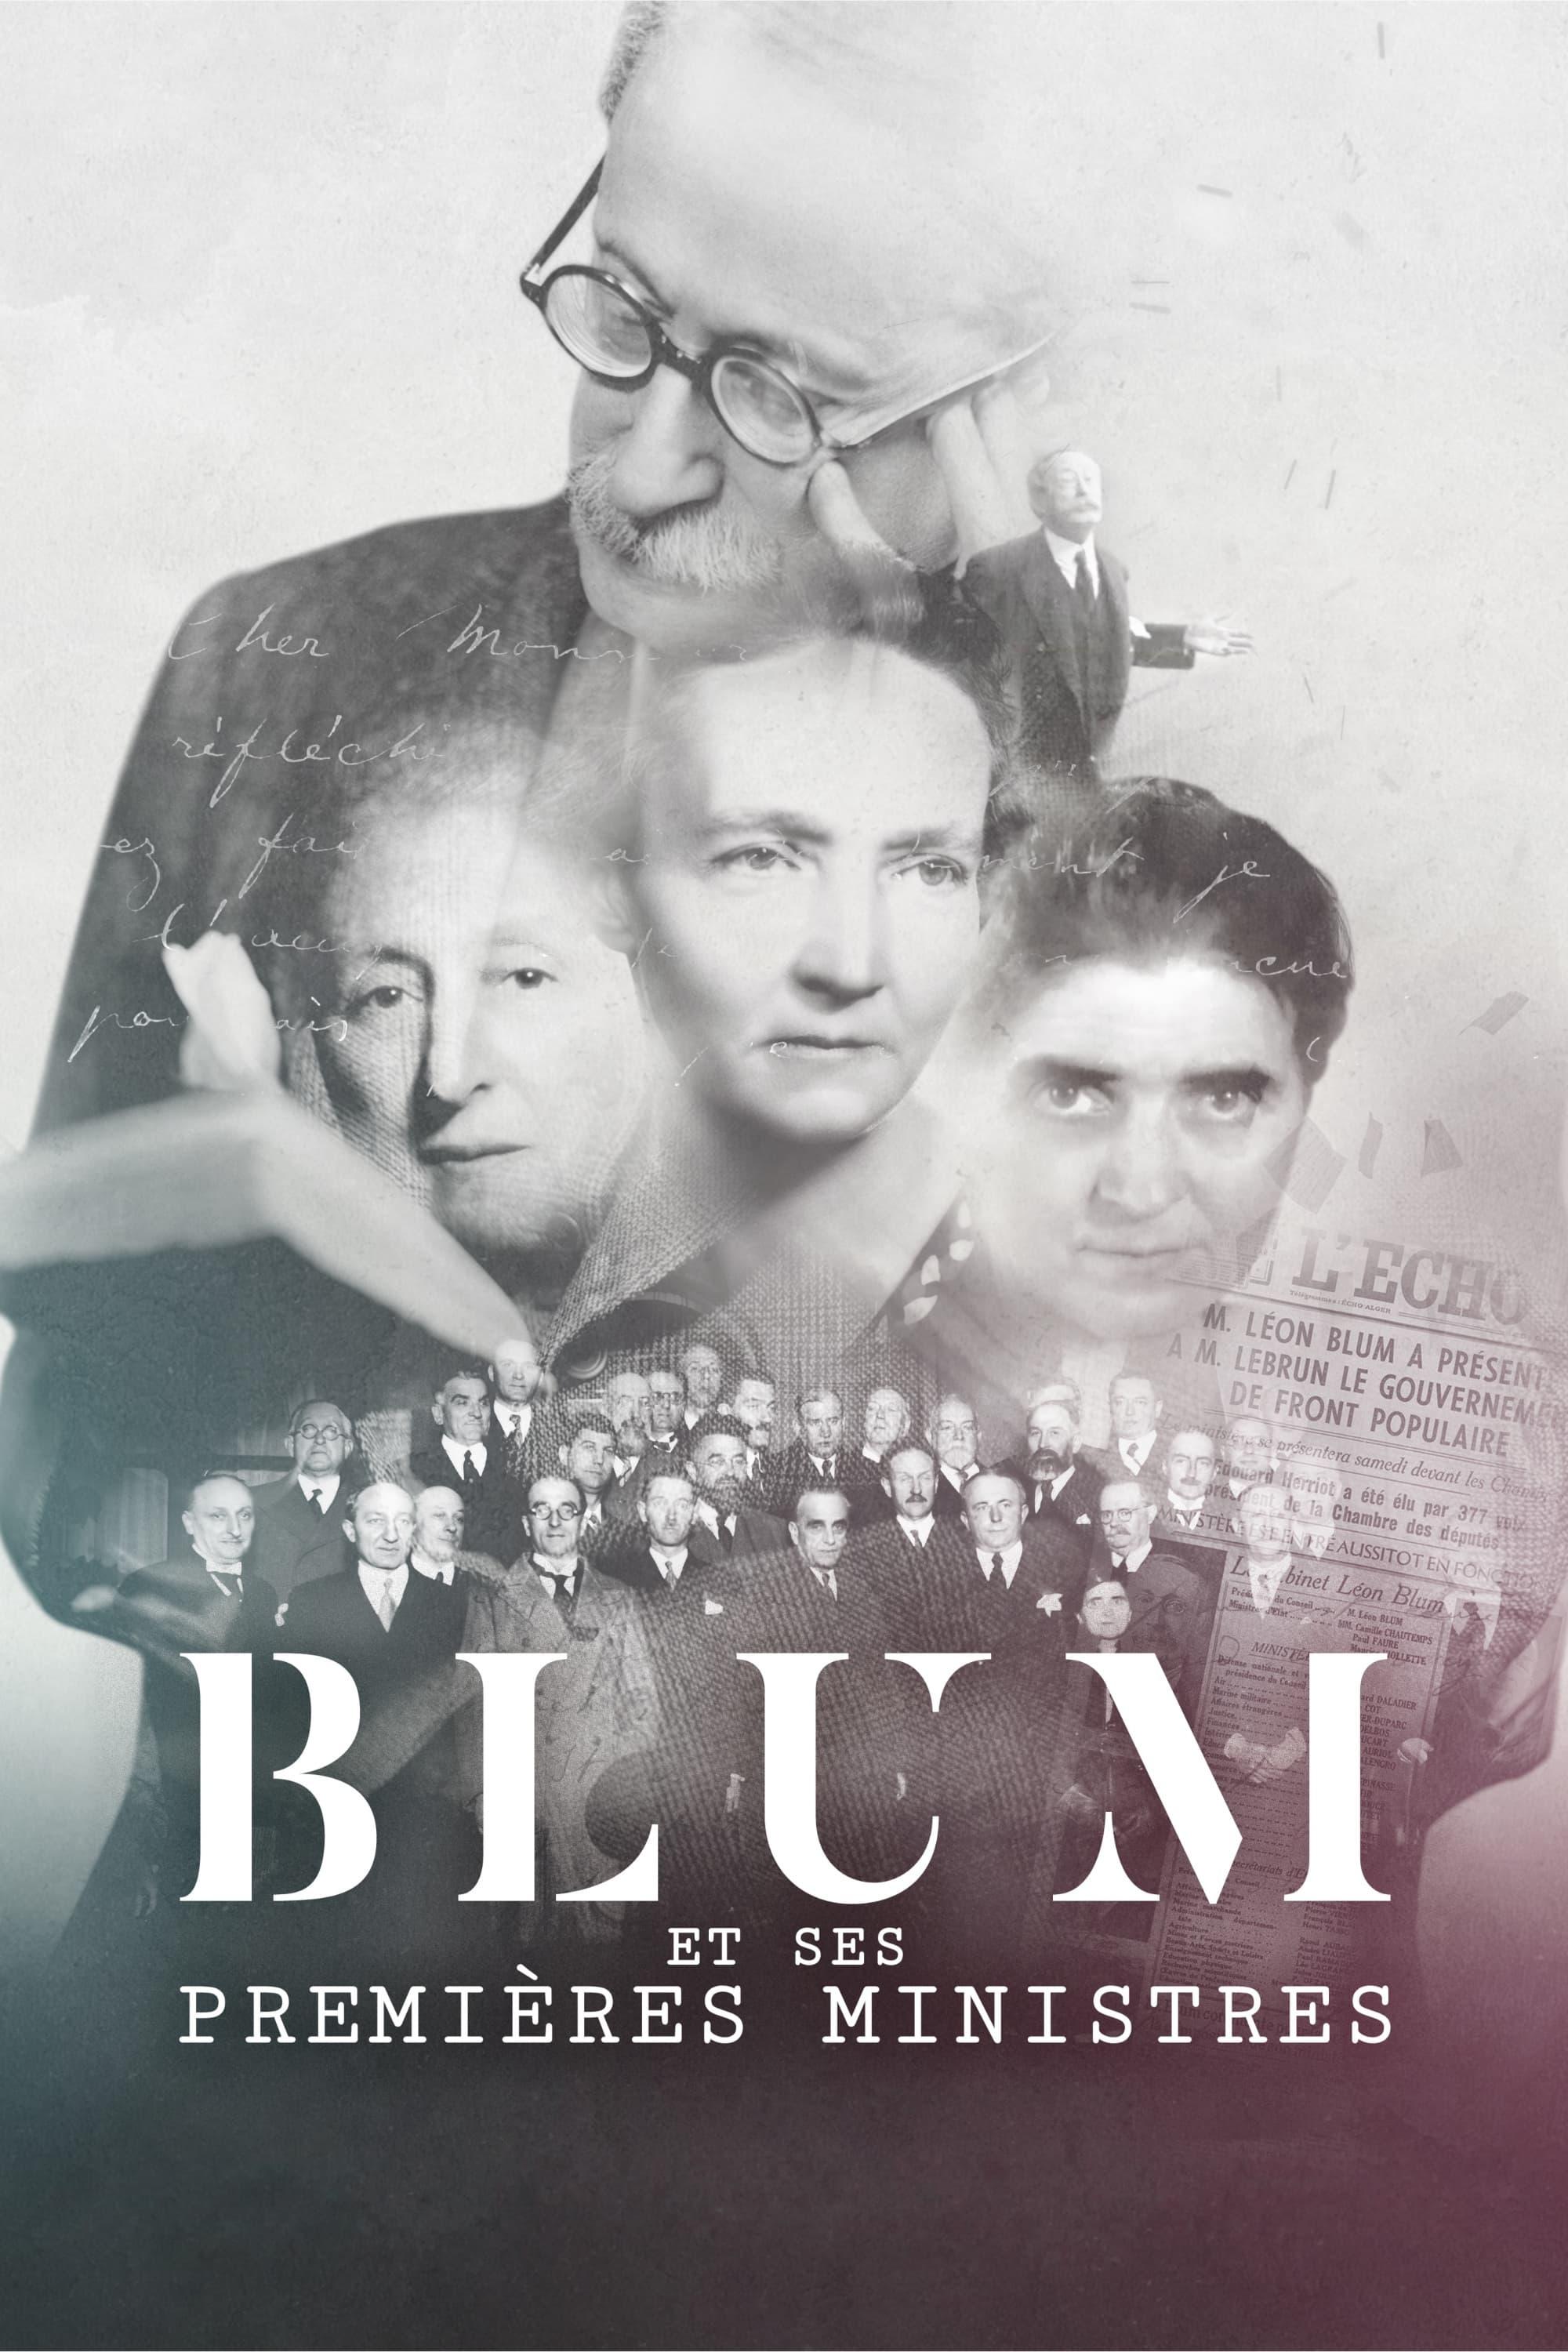 Blum et ses premières ministres poster